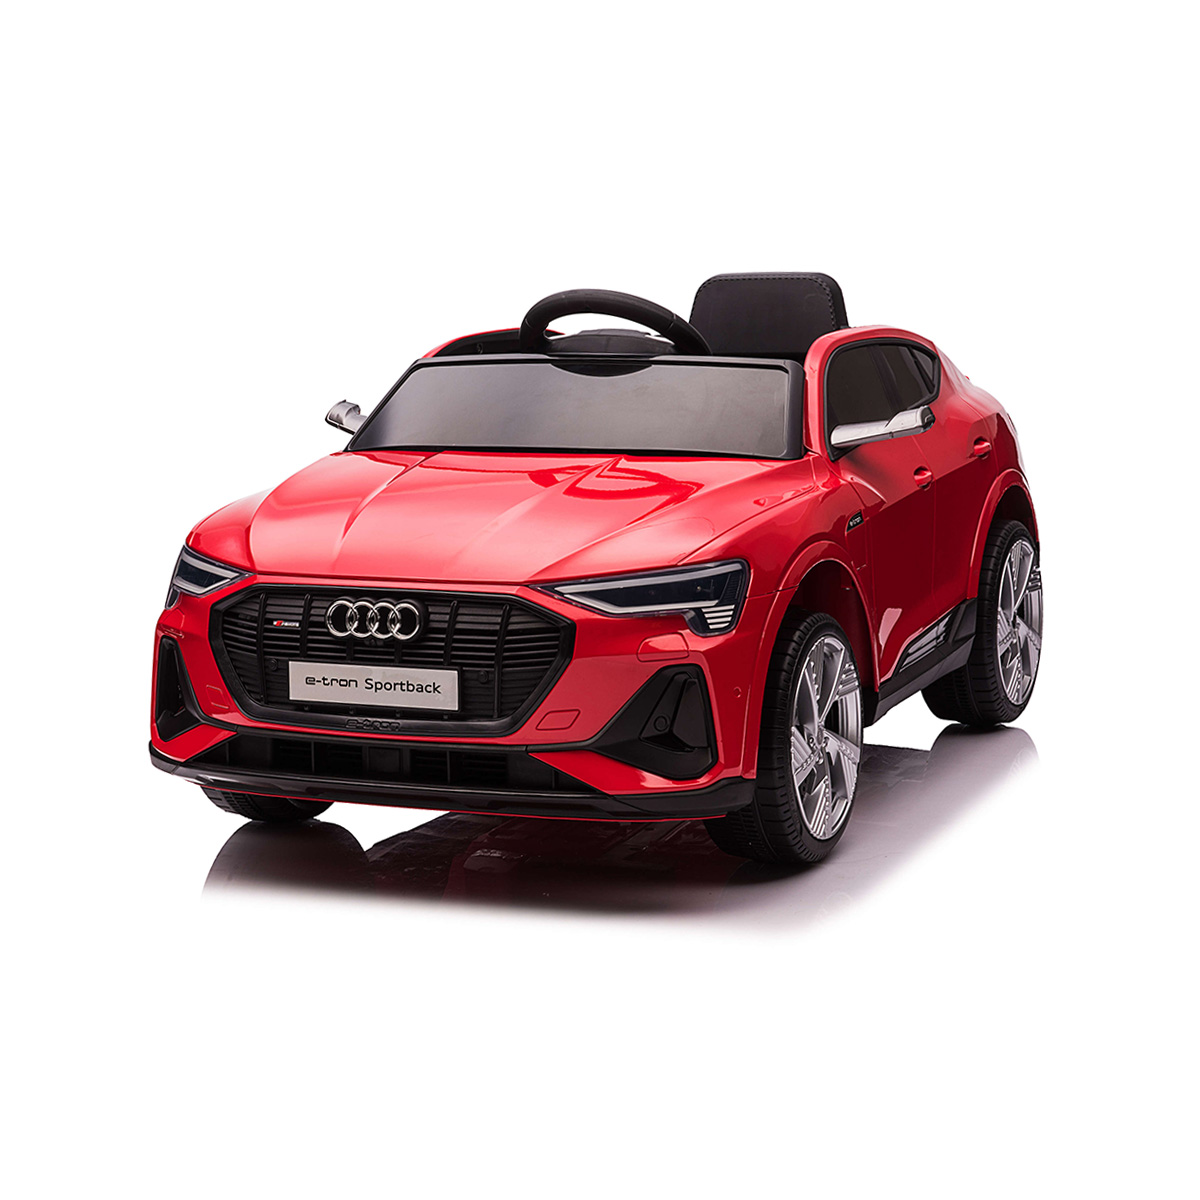 Masinuta electrica, Audi E-Tron Sportback, 12V, Rosu Masinute cu si fara pedale 2023-09-21